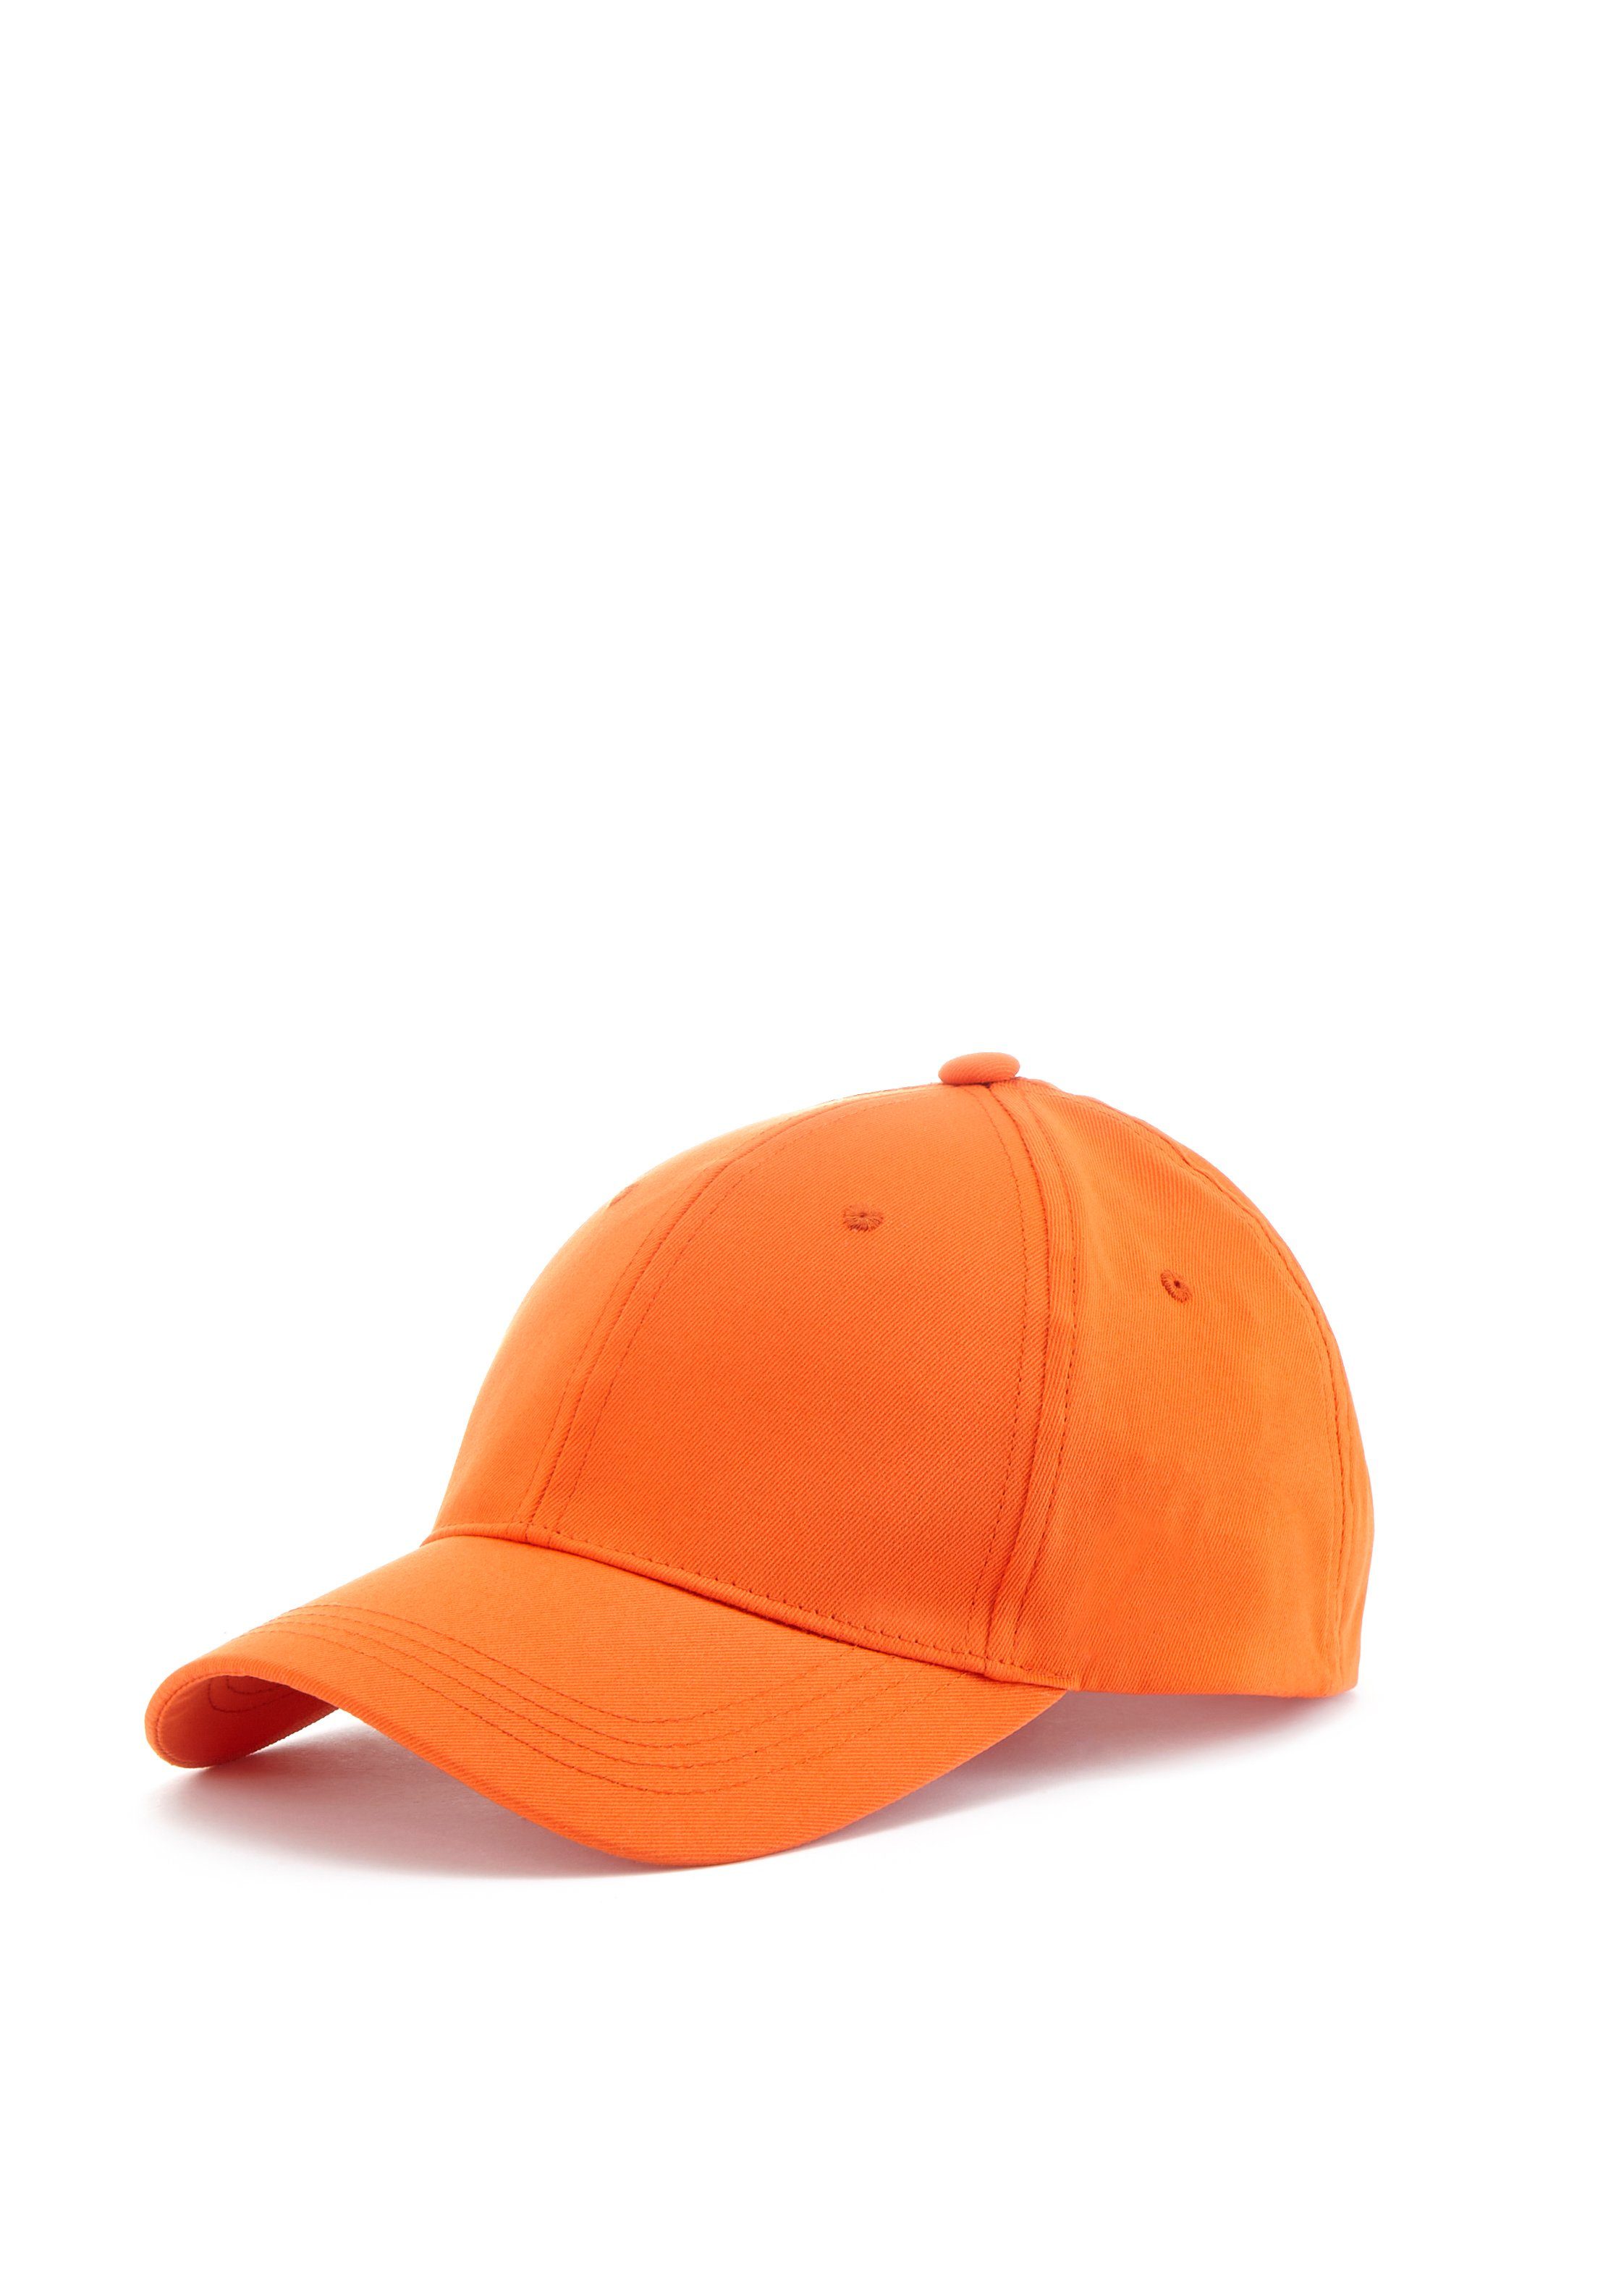 LASCANA Schirmmütze Baseball Cap, Sommerhut, Kopfbedeckung mit Klettverschluss VEGAN